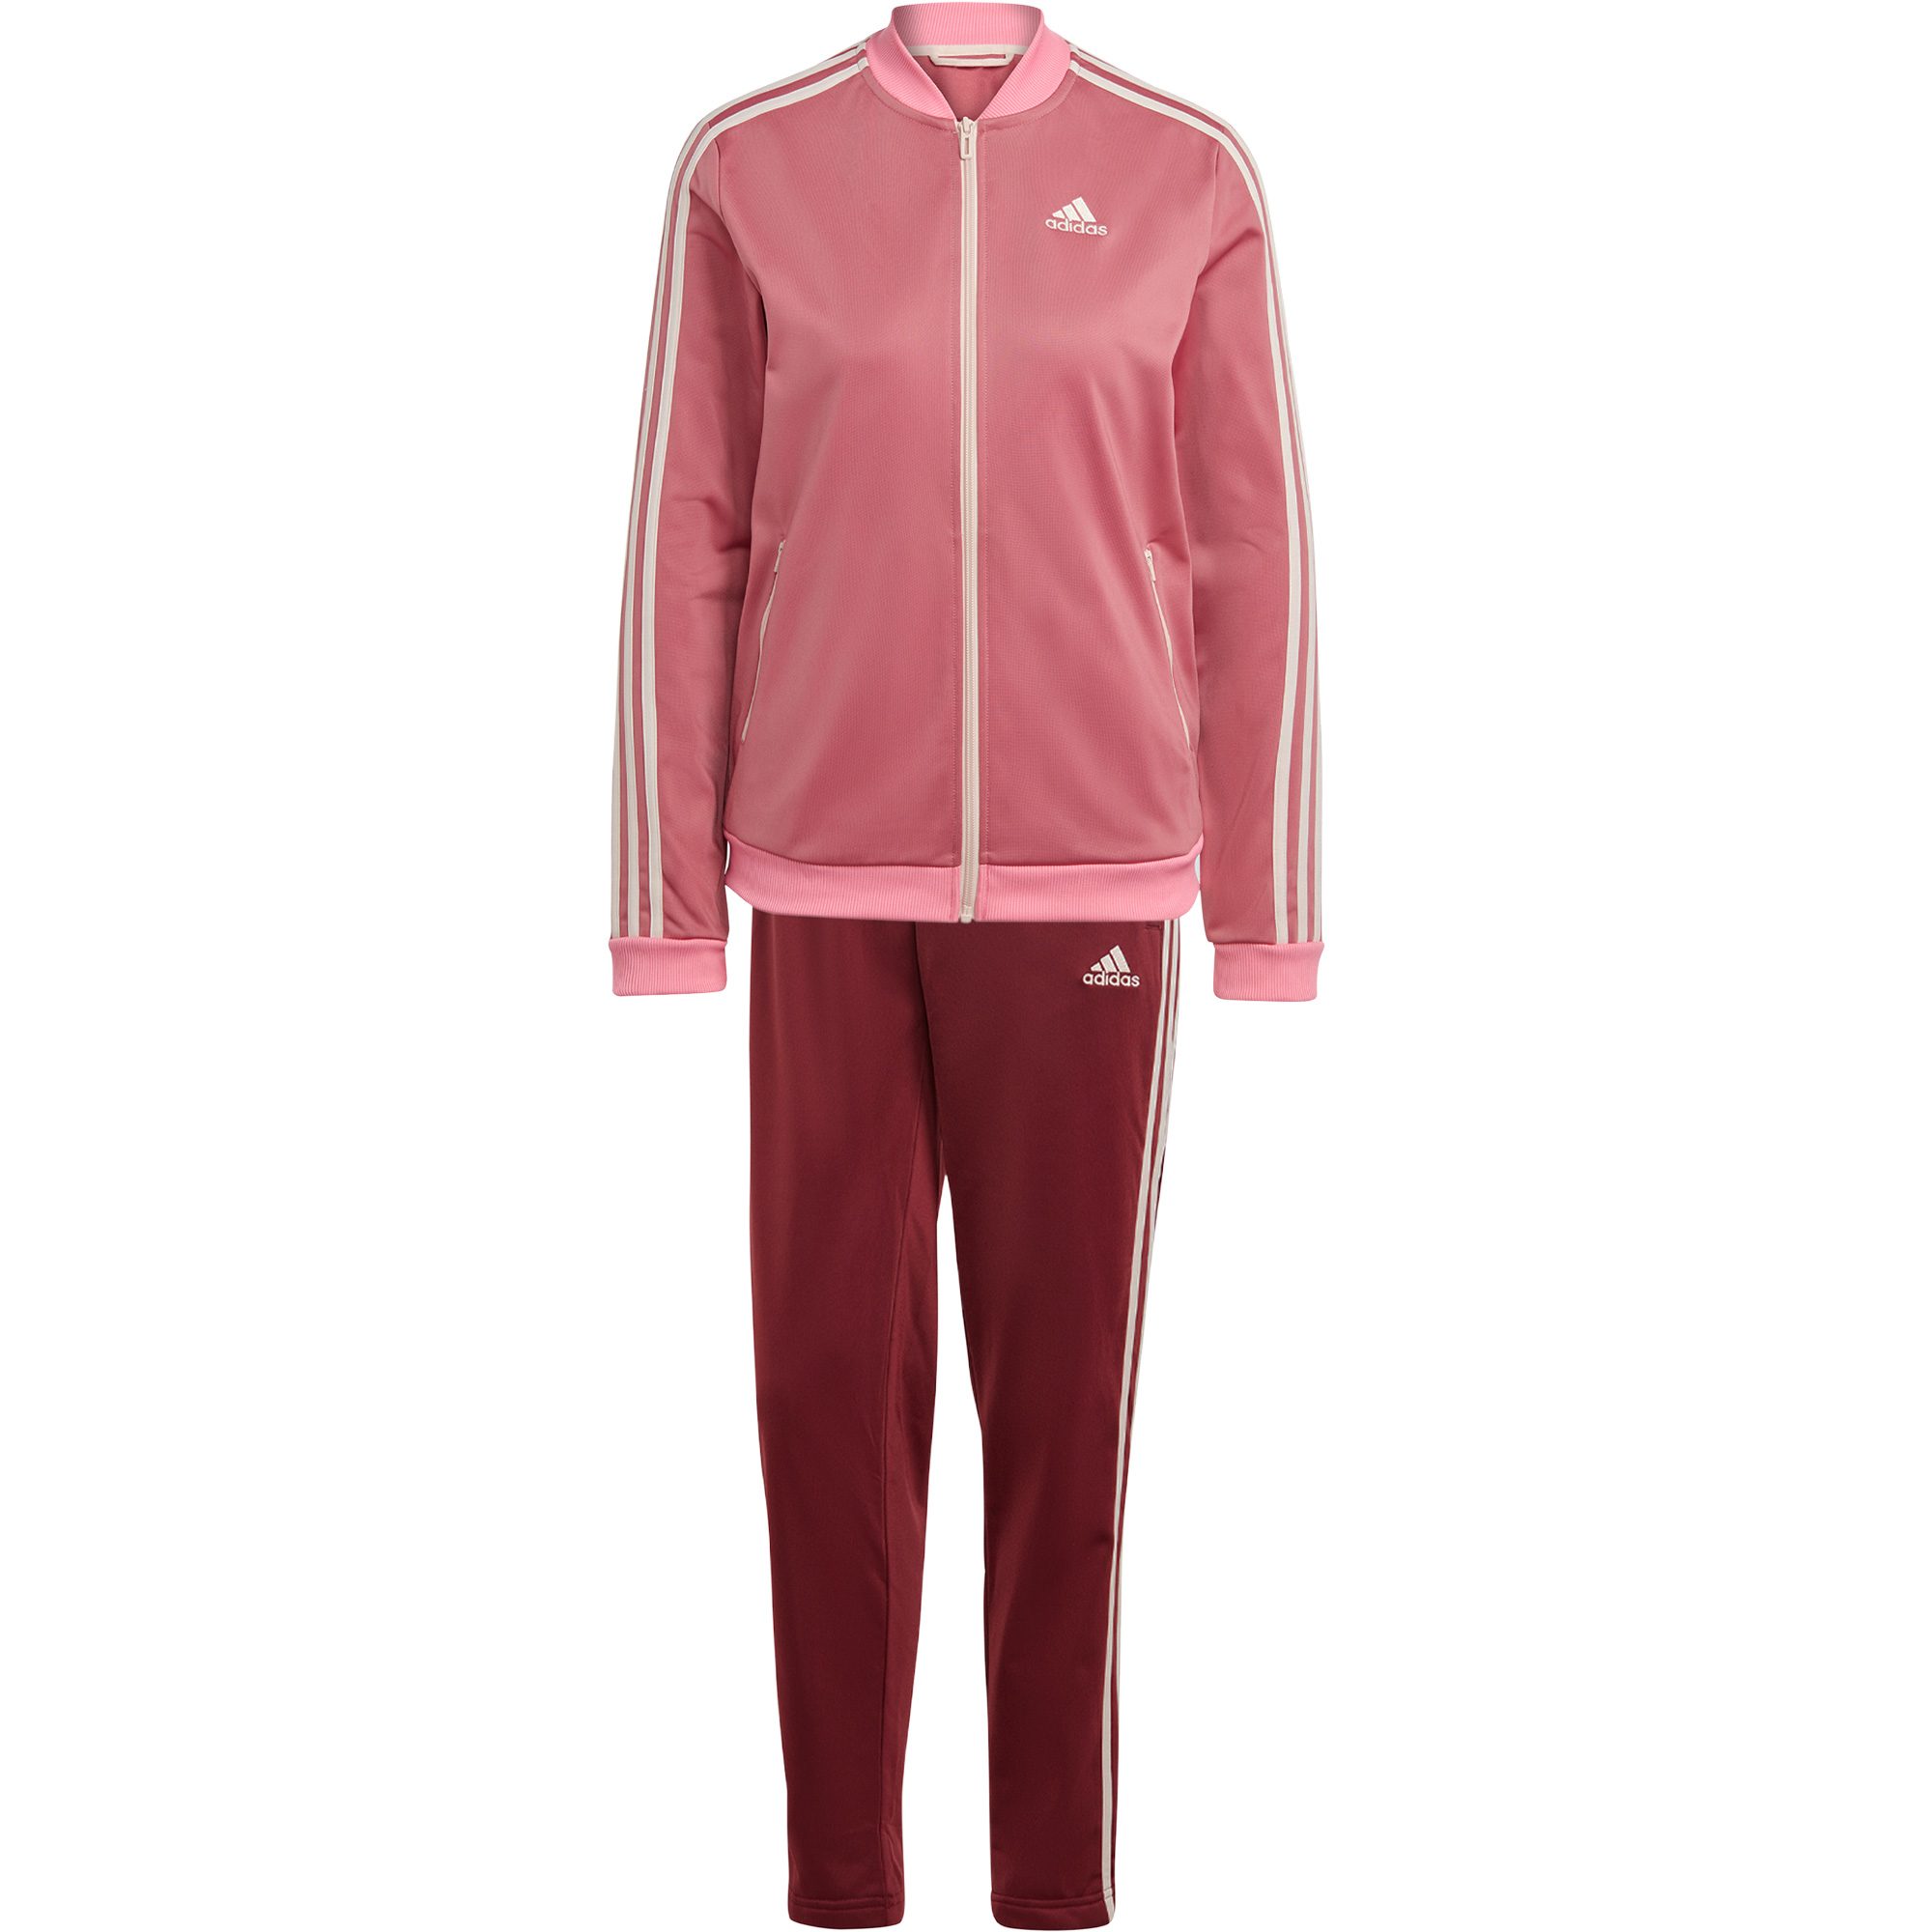 Beschrijving Herinnering technisch adidas - Essentials 3-Streifen Trainingsanzug Damen shadow red kaufen im  Sport Bittl Shop